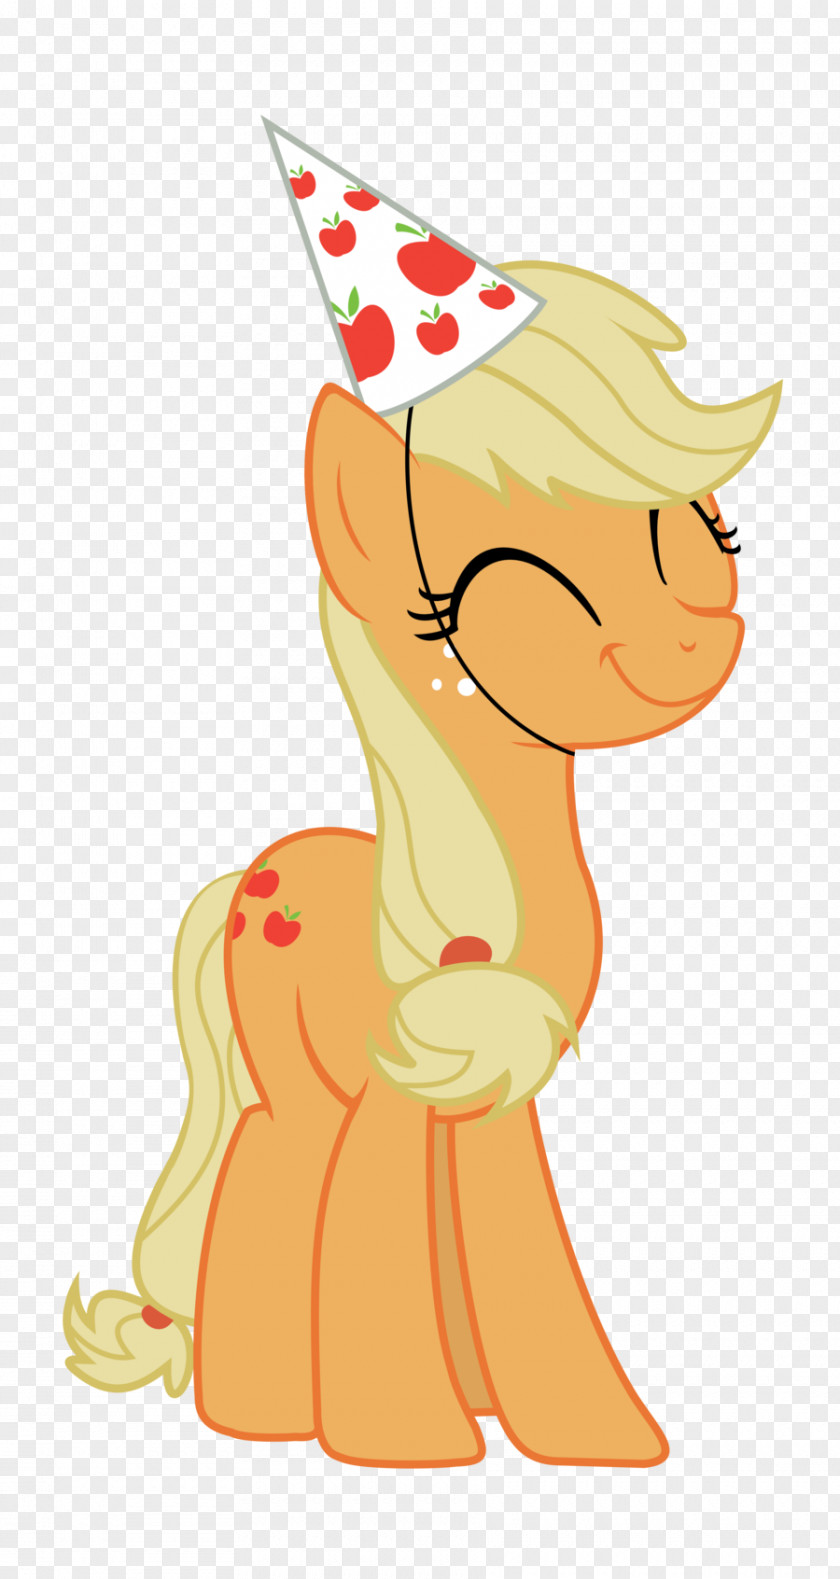 My Little Pony Applejack Twilight Sparkle Big McIntosh Pinkie Pie Rarity PNG